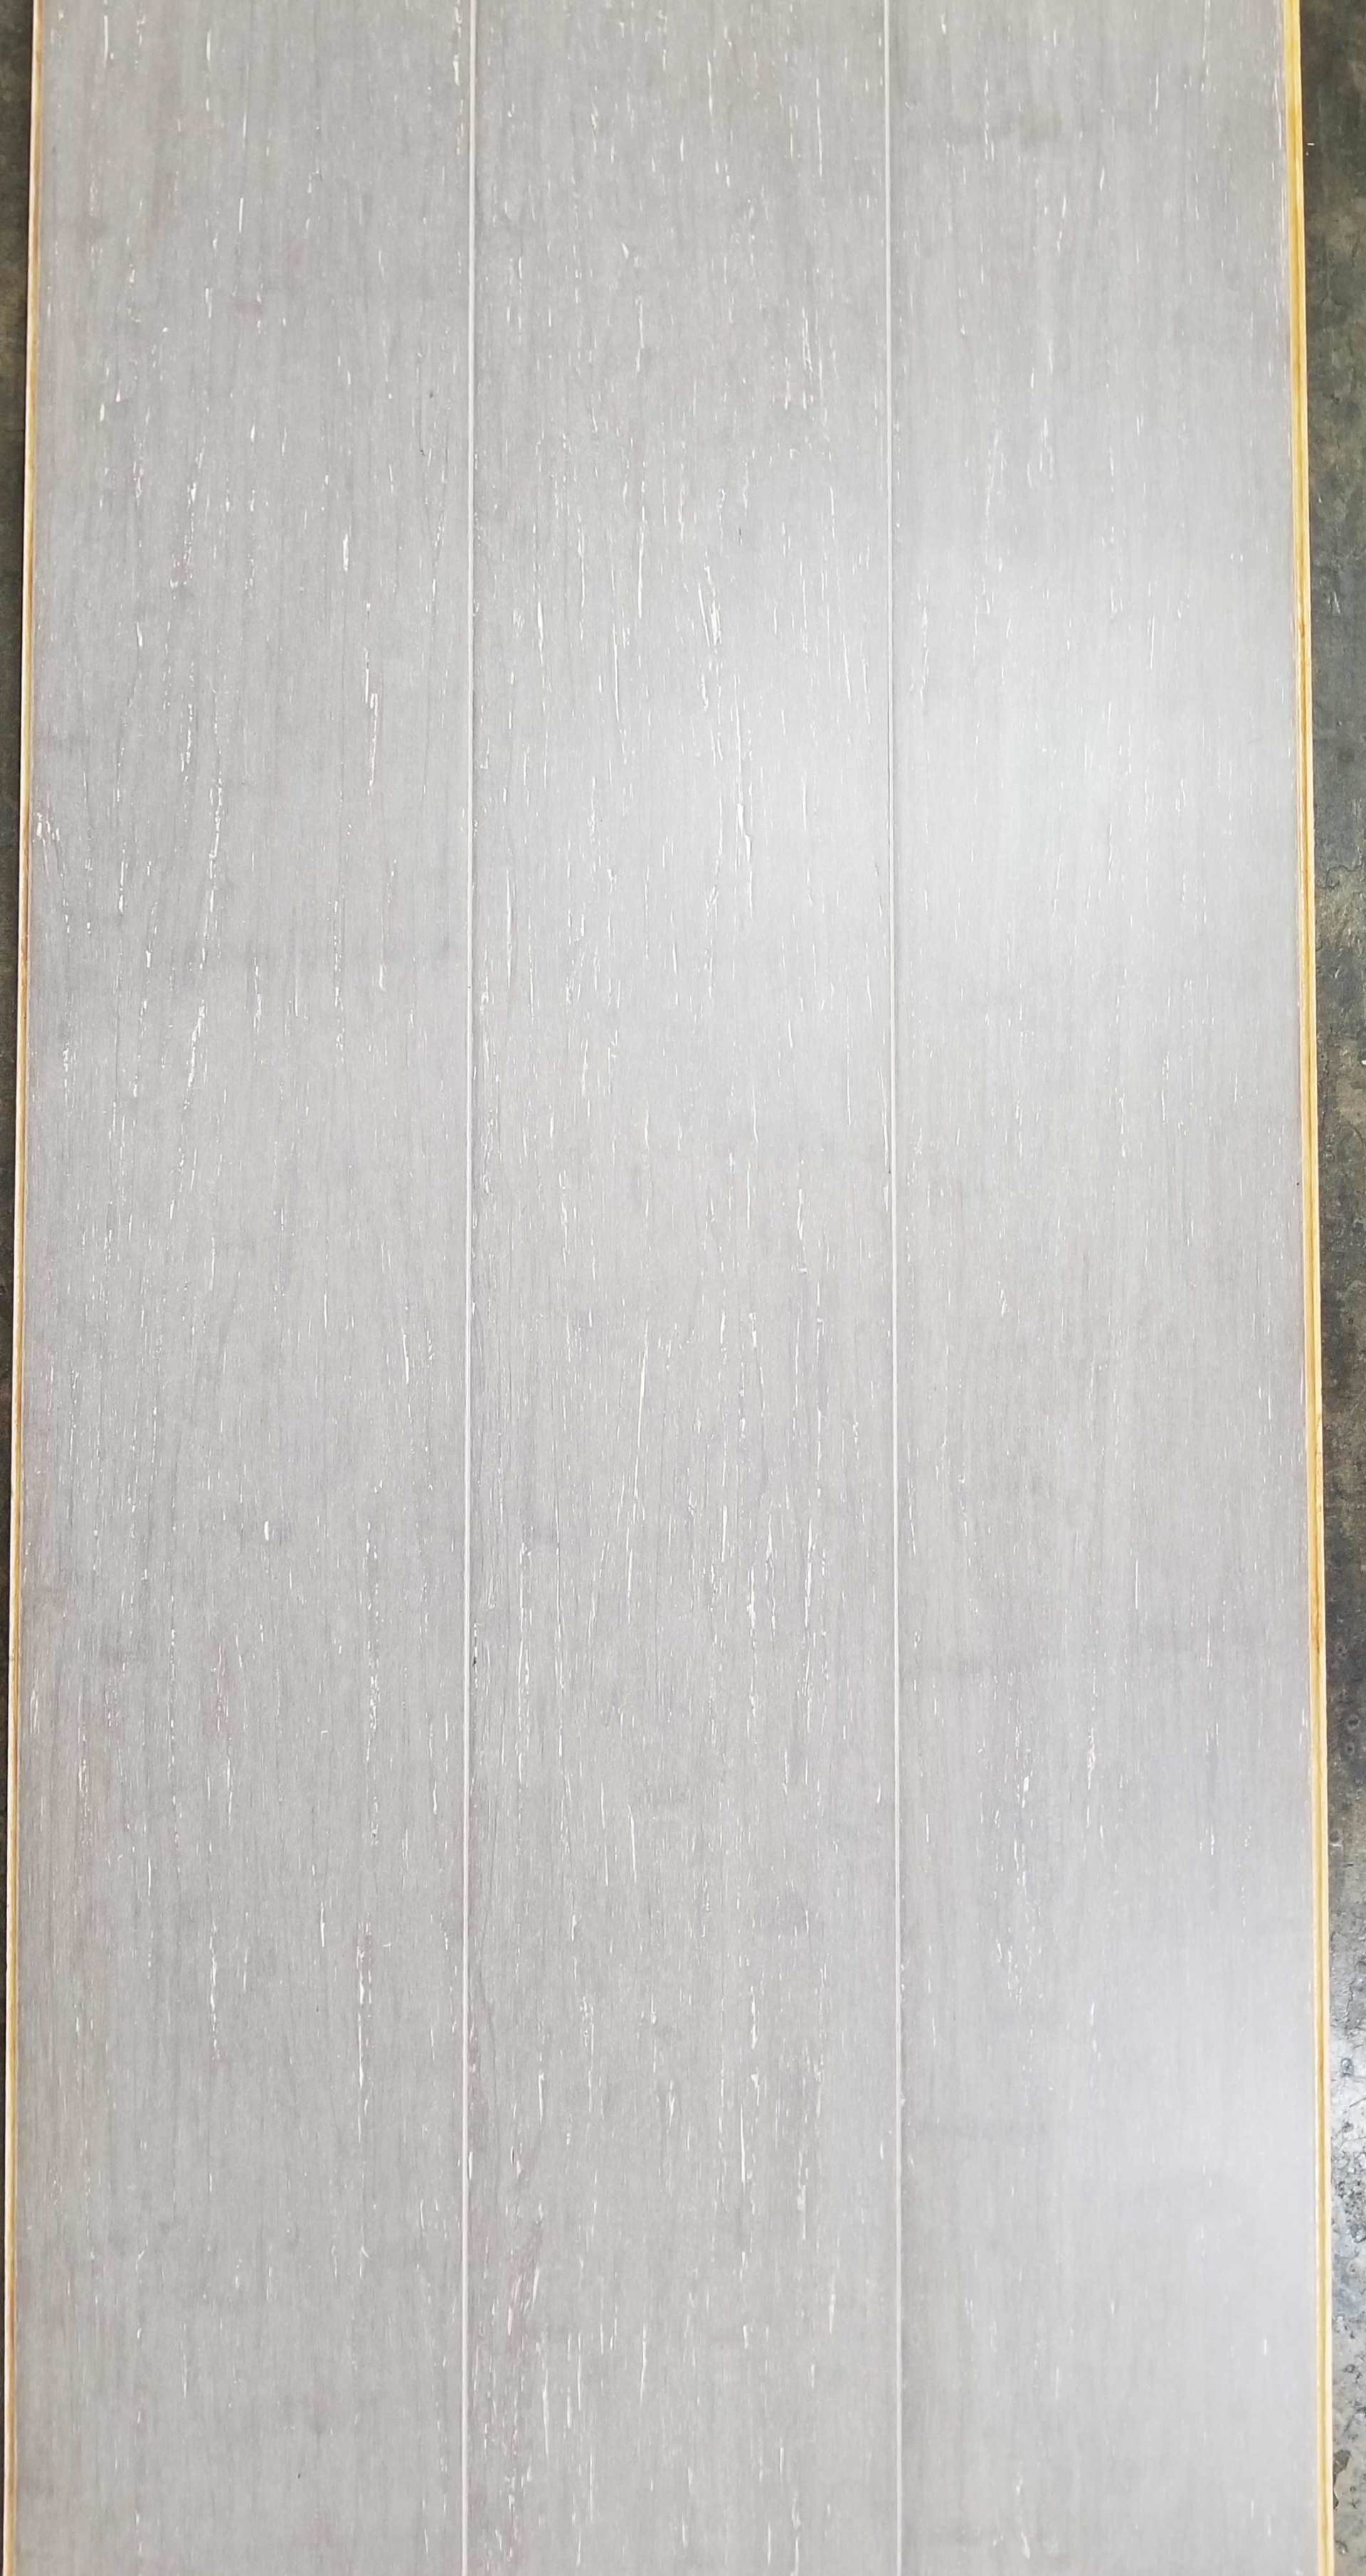 Wood Look Vinyl Plank and Travertine Tile — Hardwood Floor With SKU Number 30100511103 in Saint Petersburg, FL